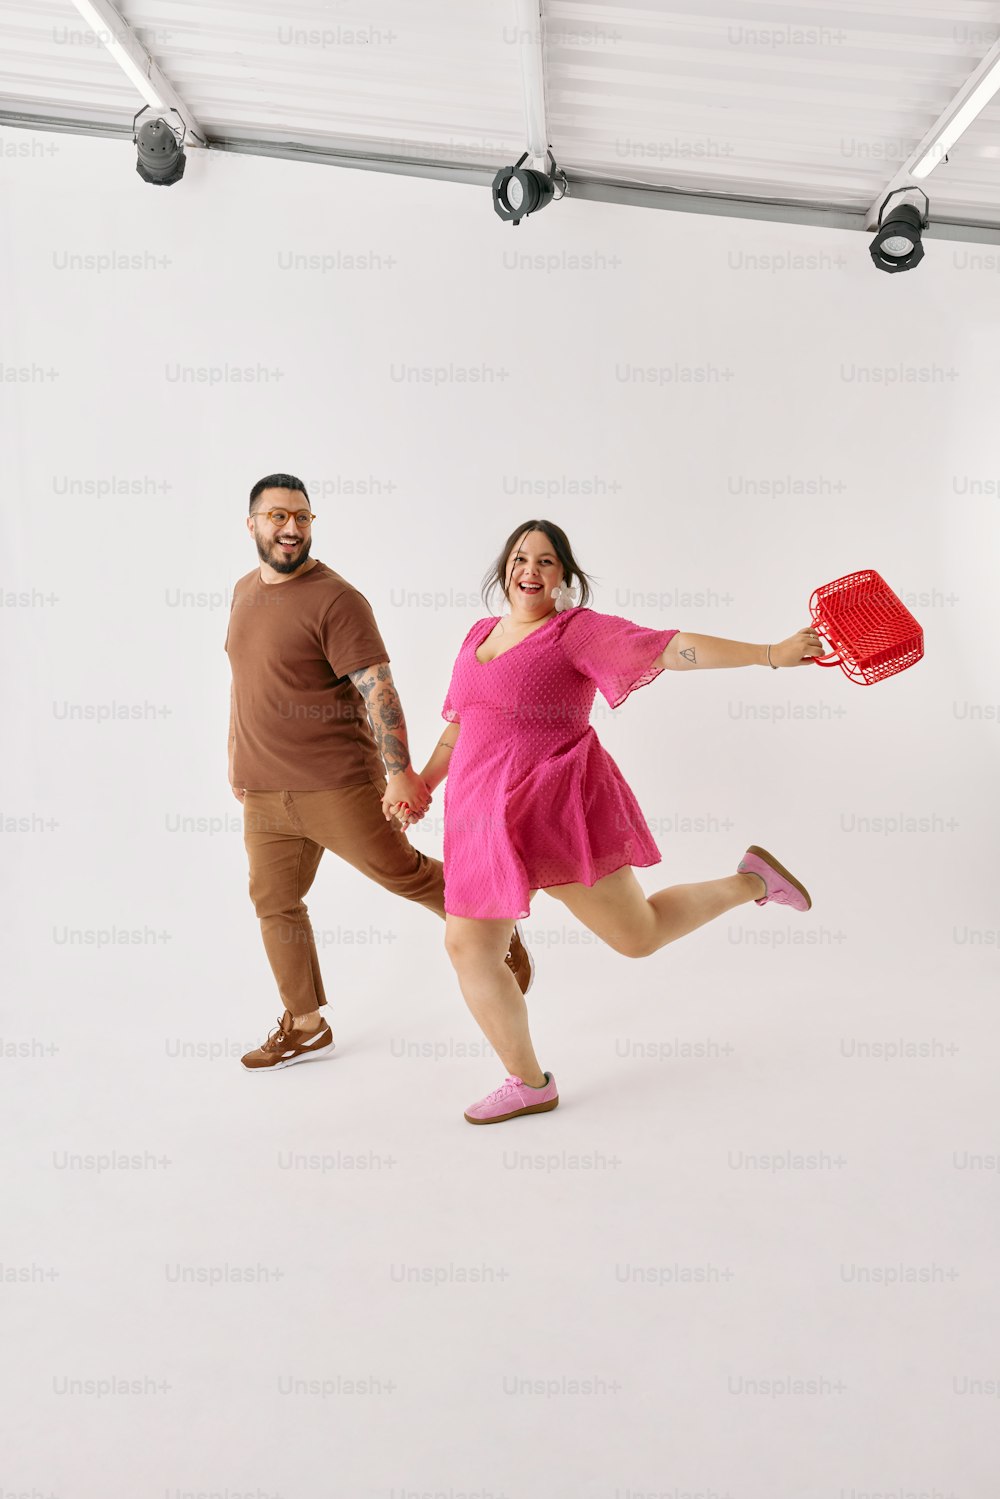 Un hombre y una mujer sosteniendo un frisbee rojo